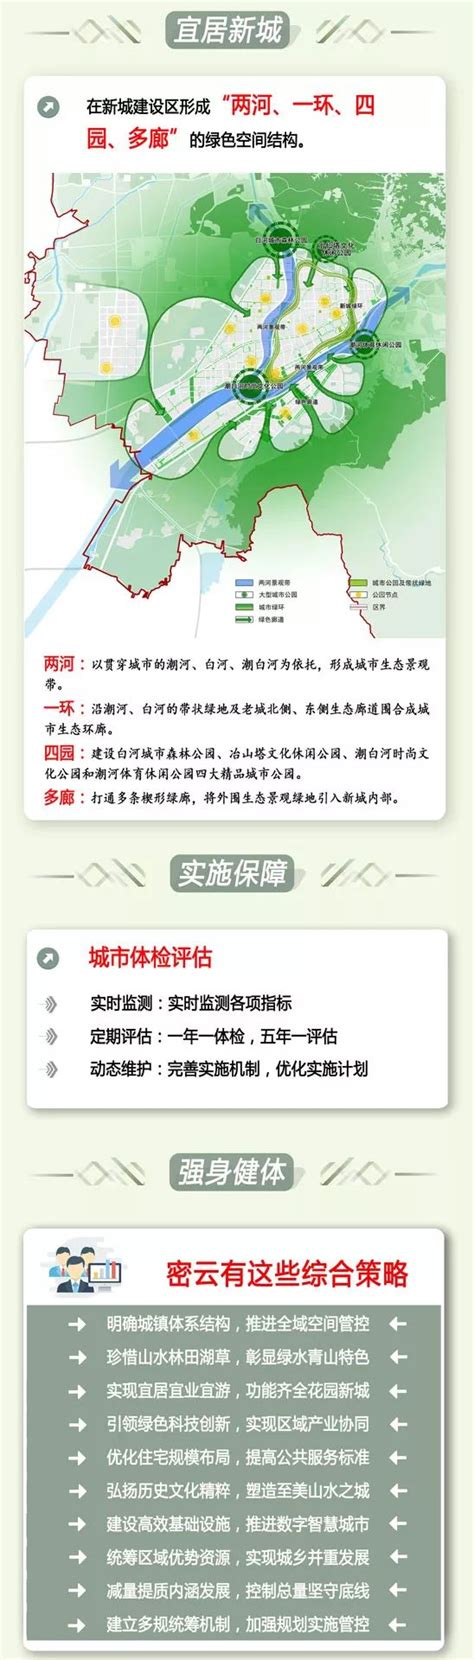 密云分区规划草案2017年-2035年(图解)- 北京本地宝